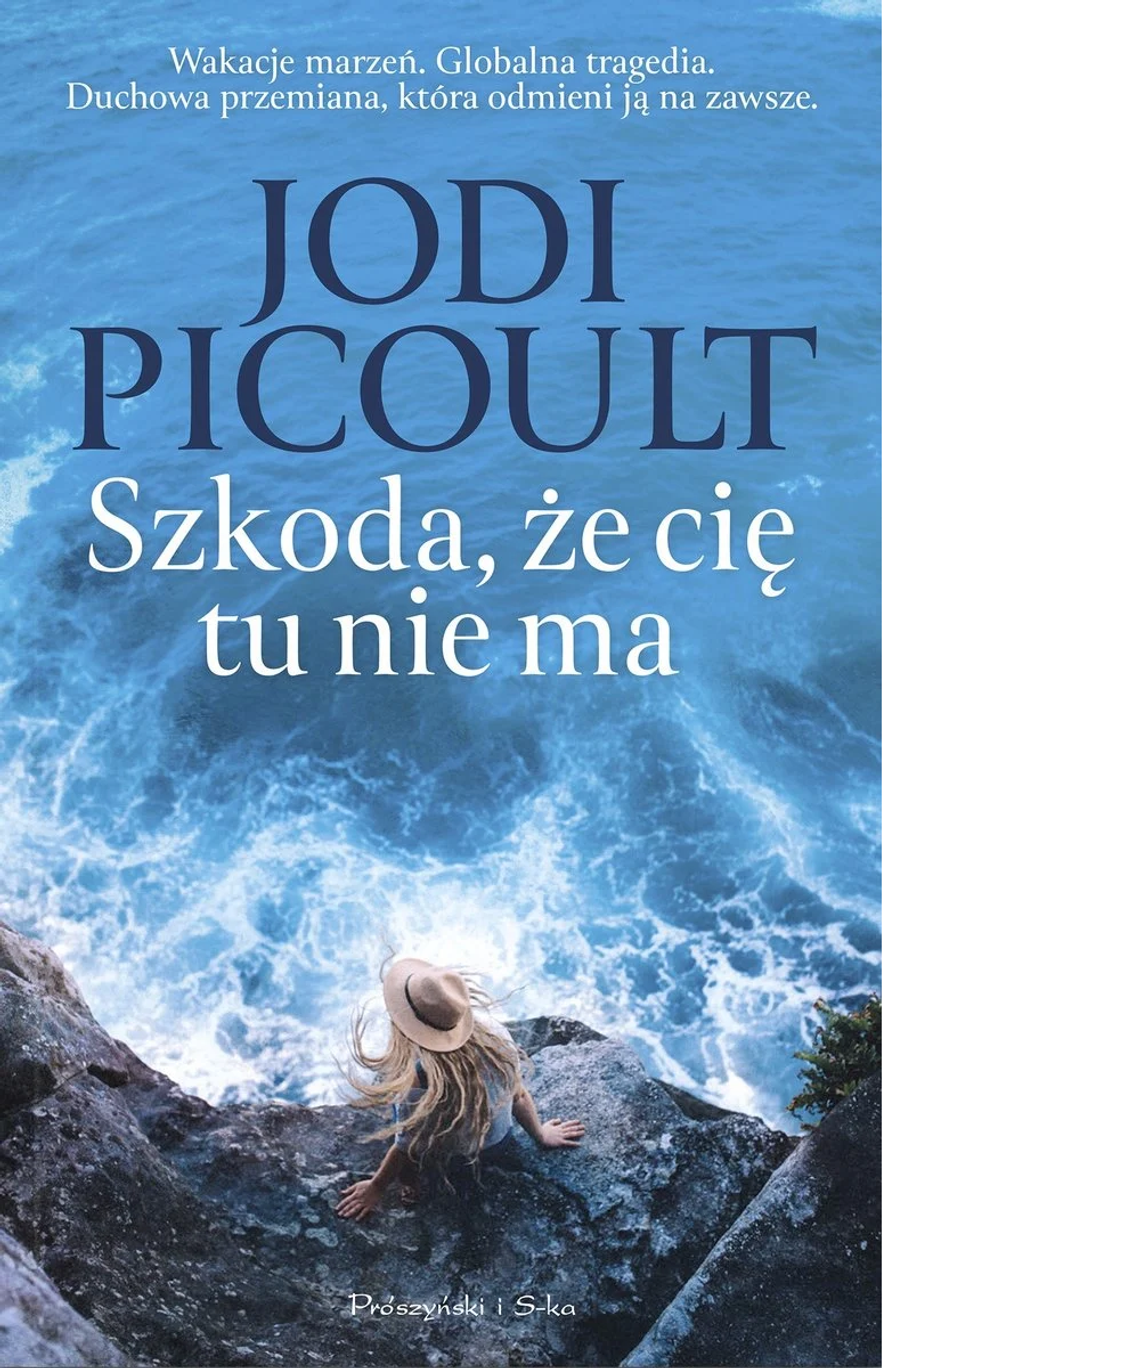 Jodi Picoult - Szkoda, że cię tu nie ma - Wyd. Prószyński i S-ka